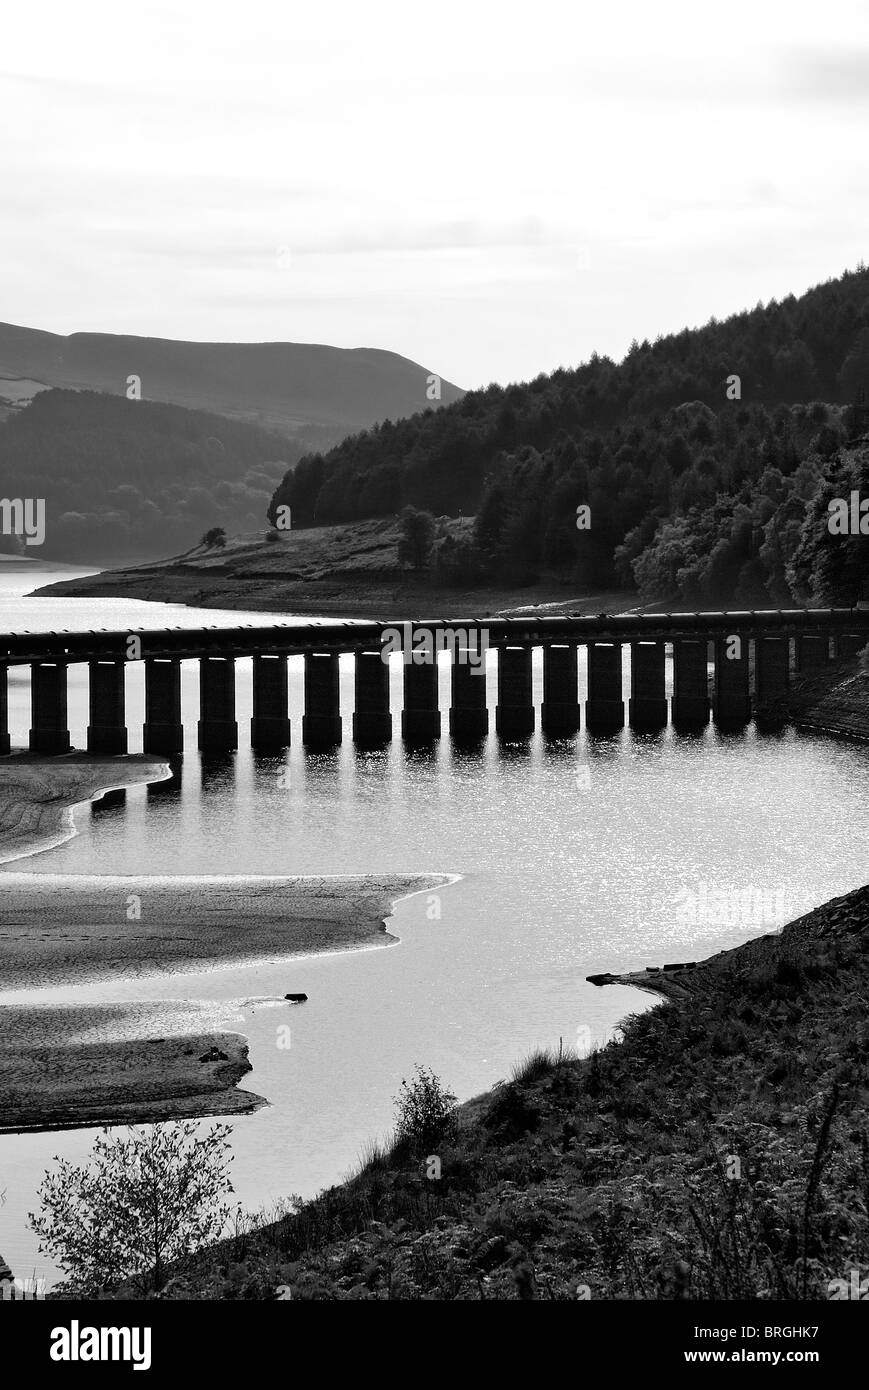 aqueduct across ladybower dam Derbyshire england uk Stock Photo